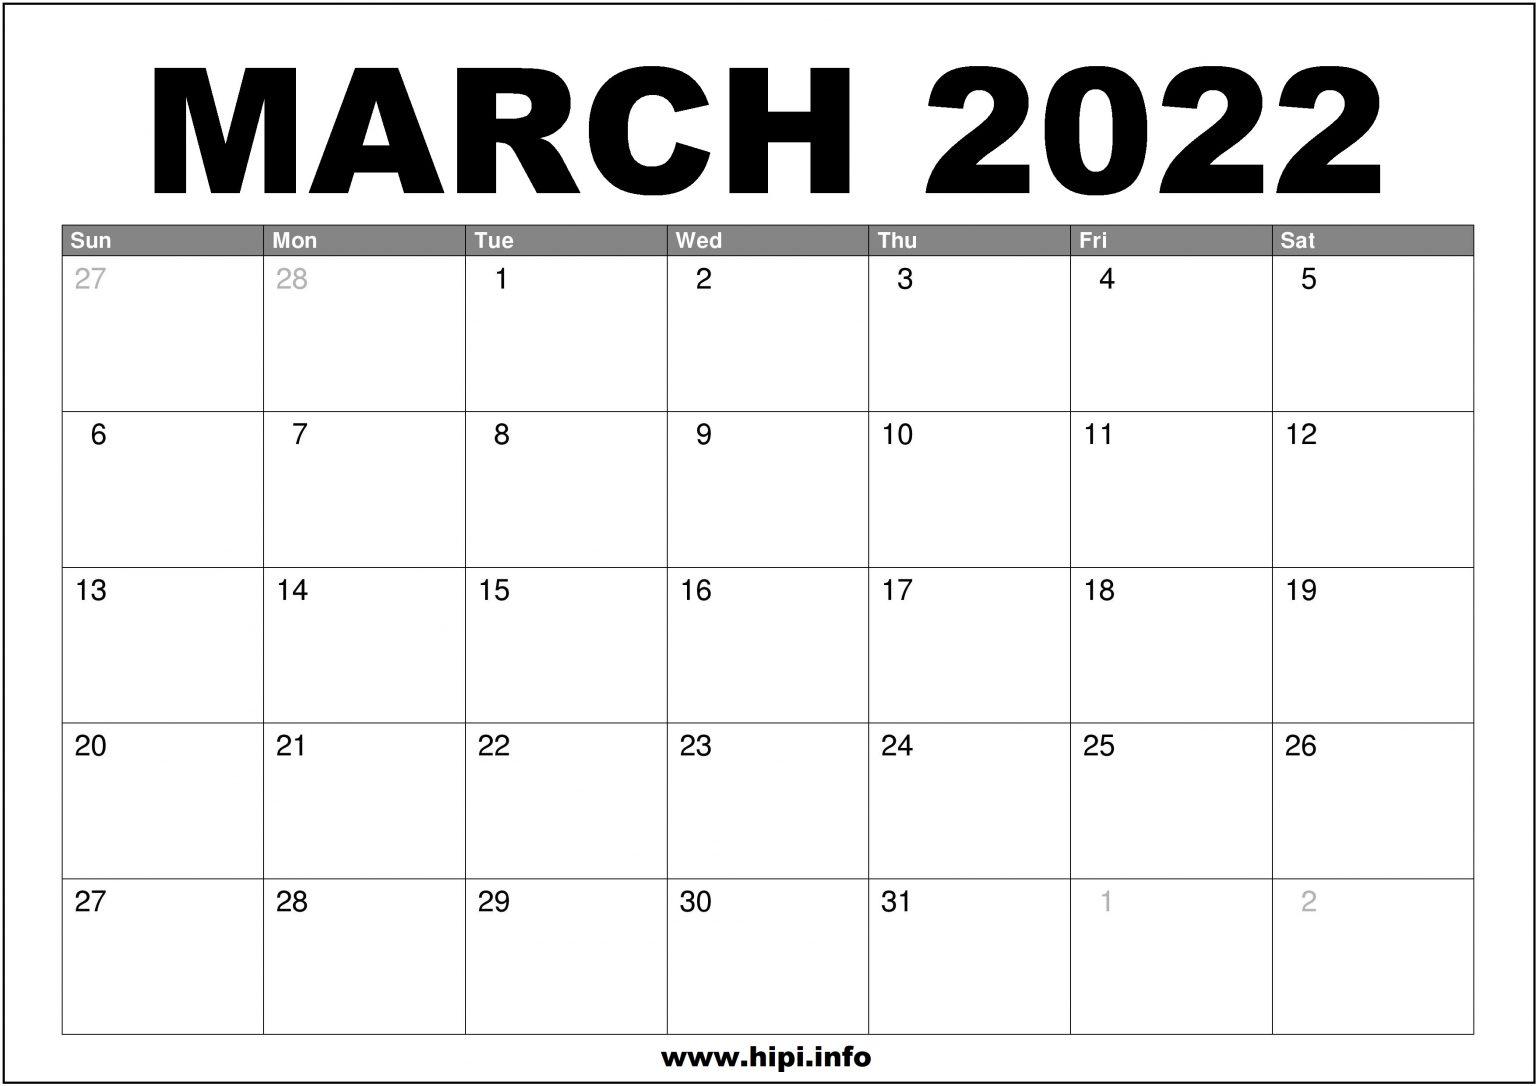 March 2022 Calendar Printable Free - Hipi | Calendars